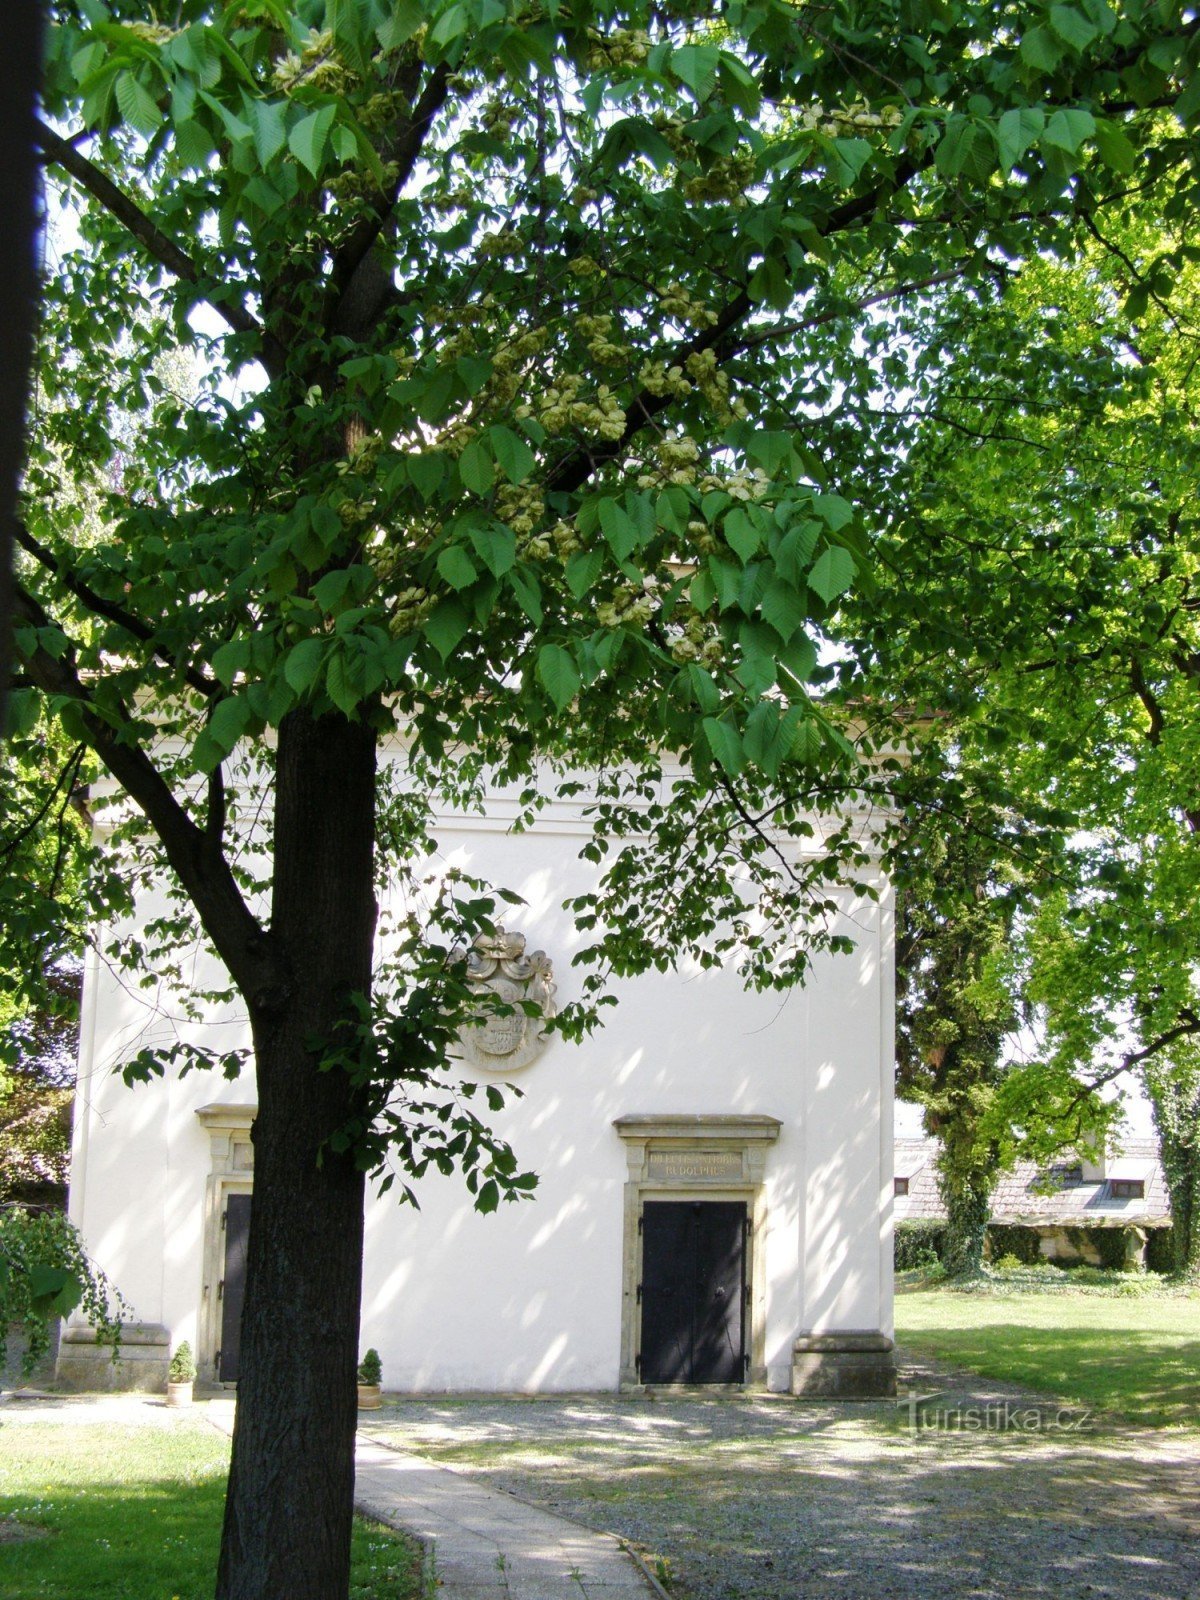 Опочно - Церковь Девы Марии